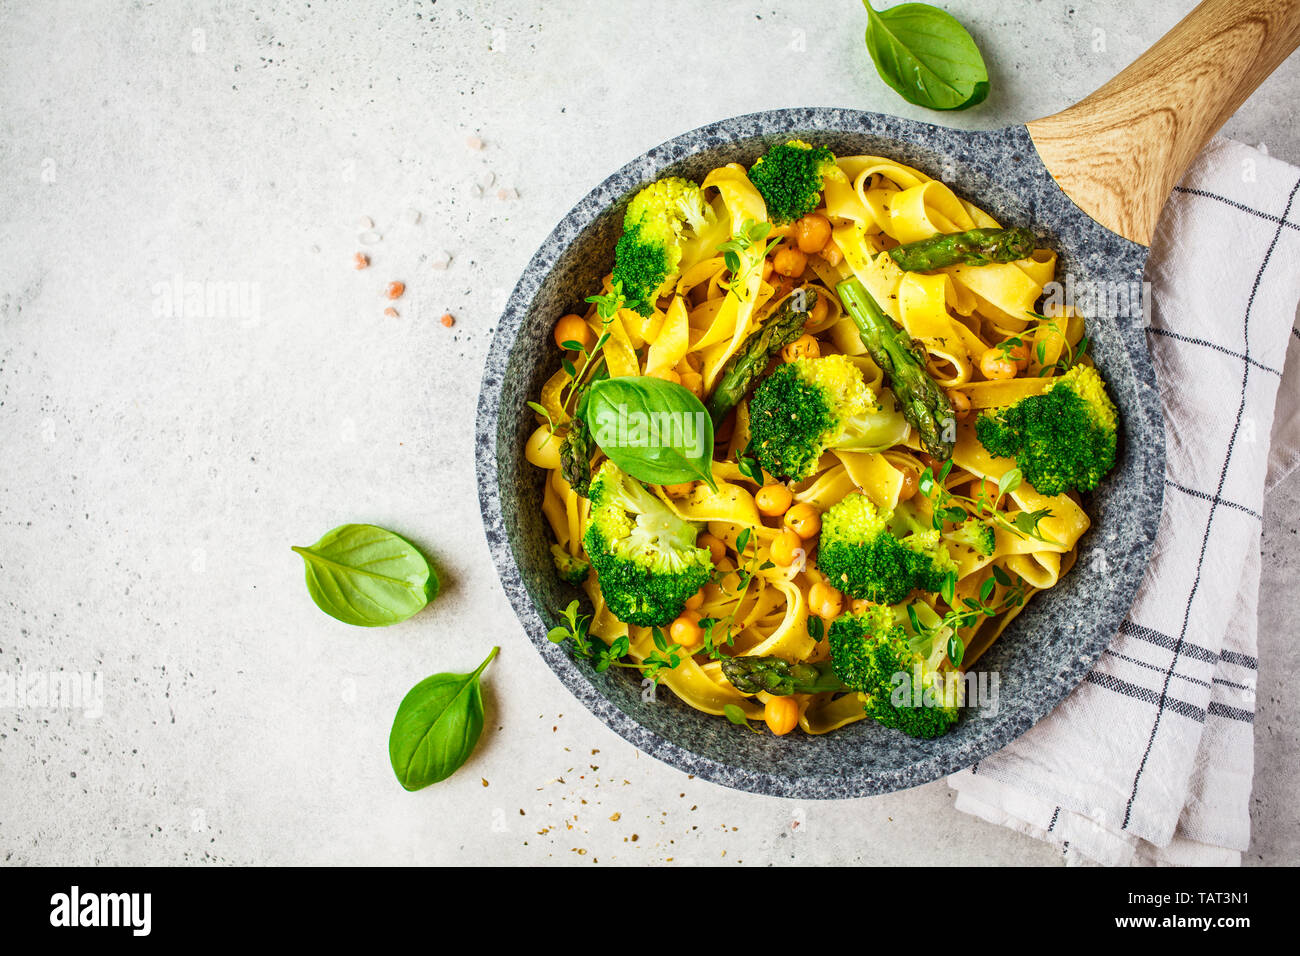 Pâtes végétariennes avec le brocoli, les asperges et les pois chiches dans une casserole. La nourriture végane concept. Banque D'Images